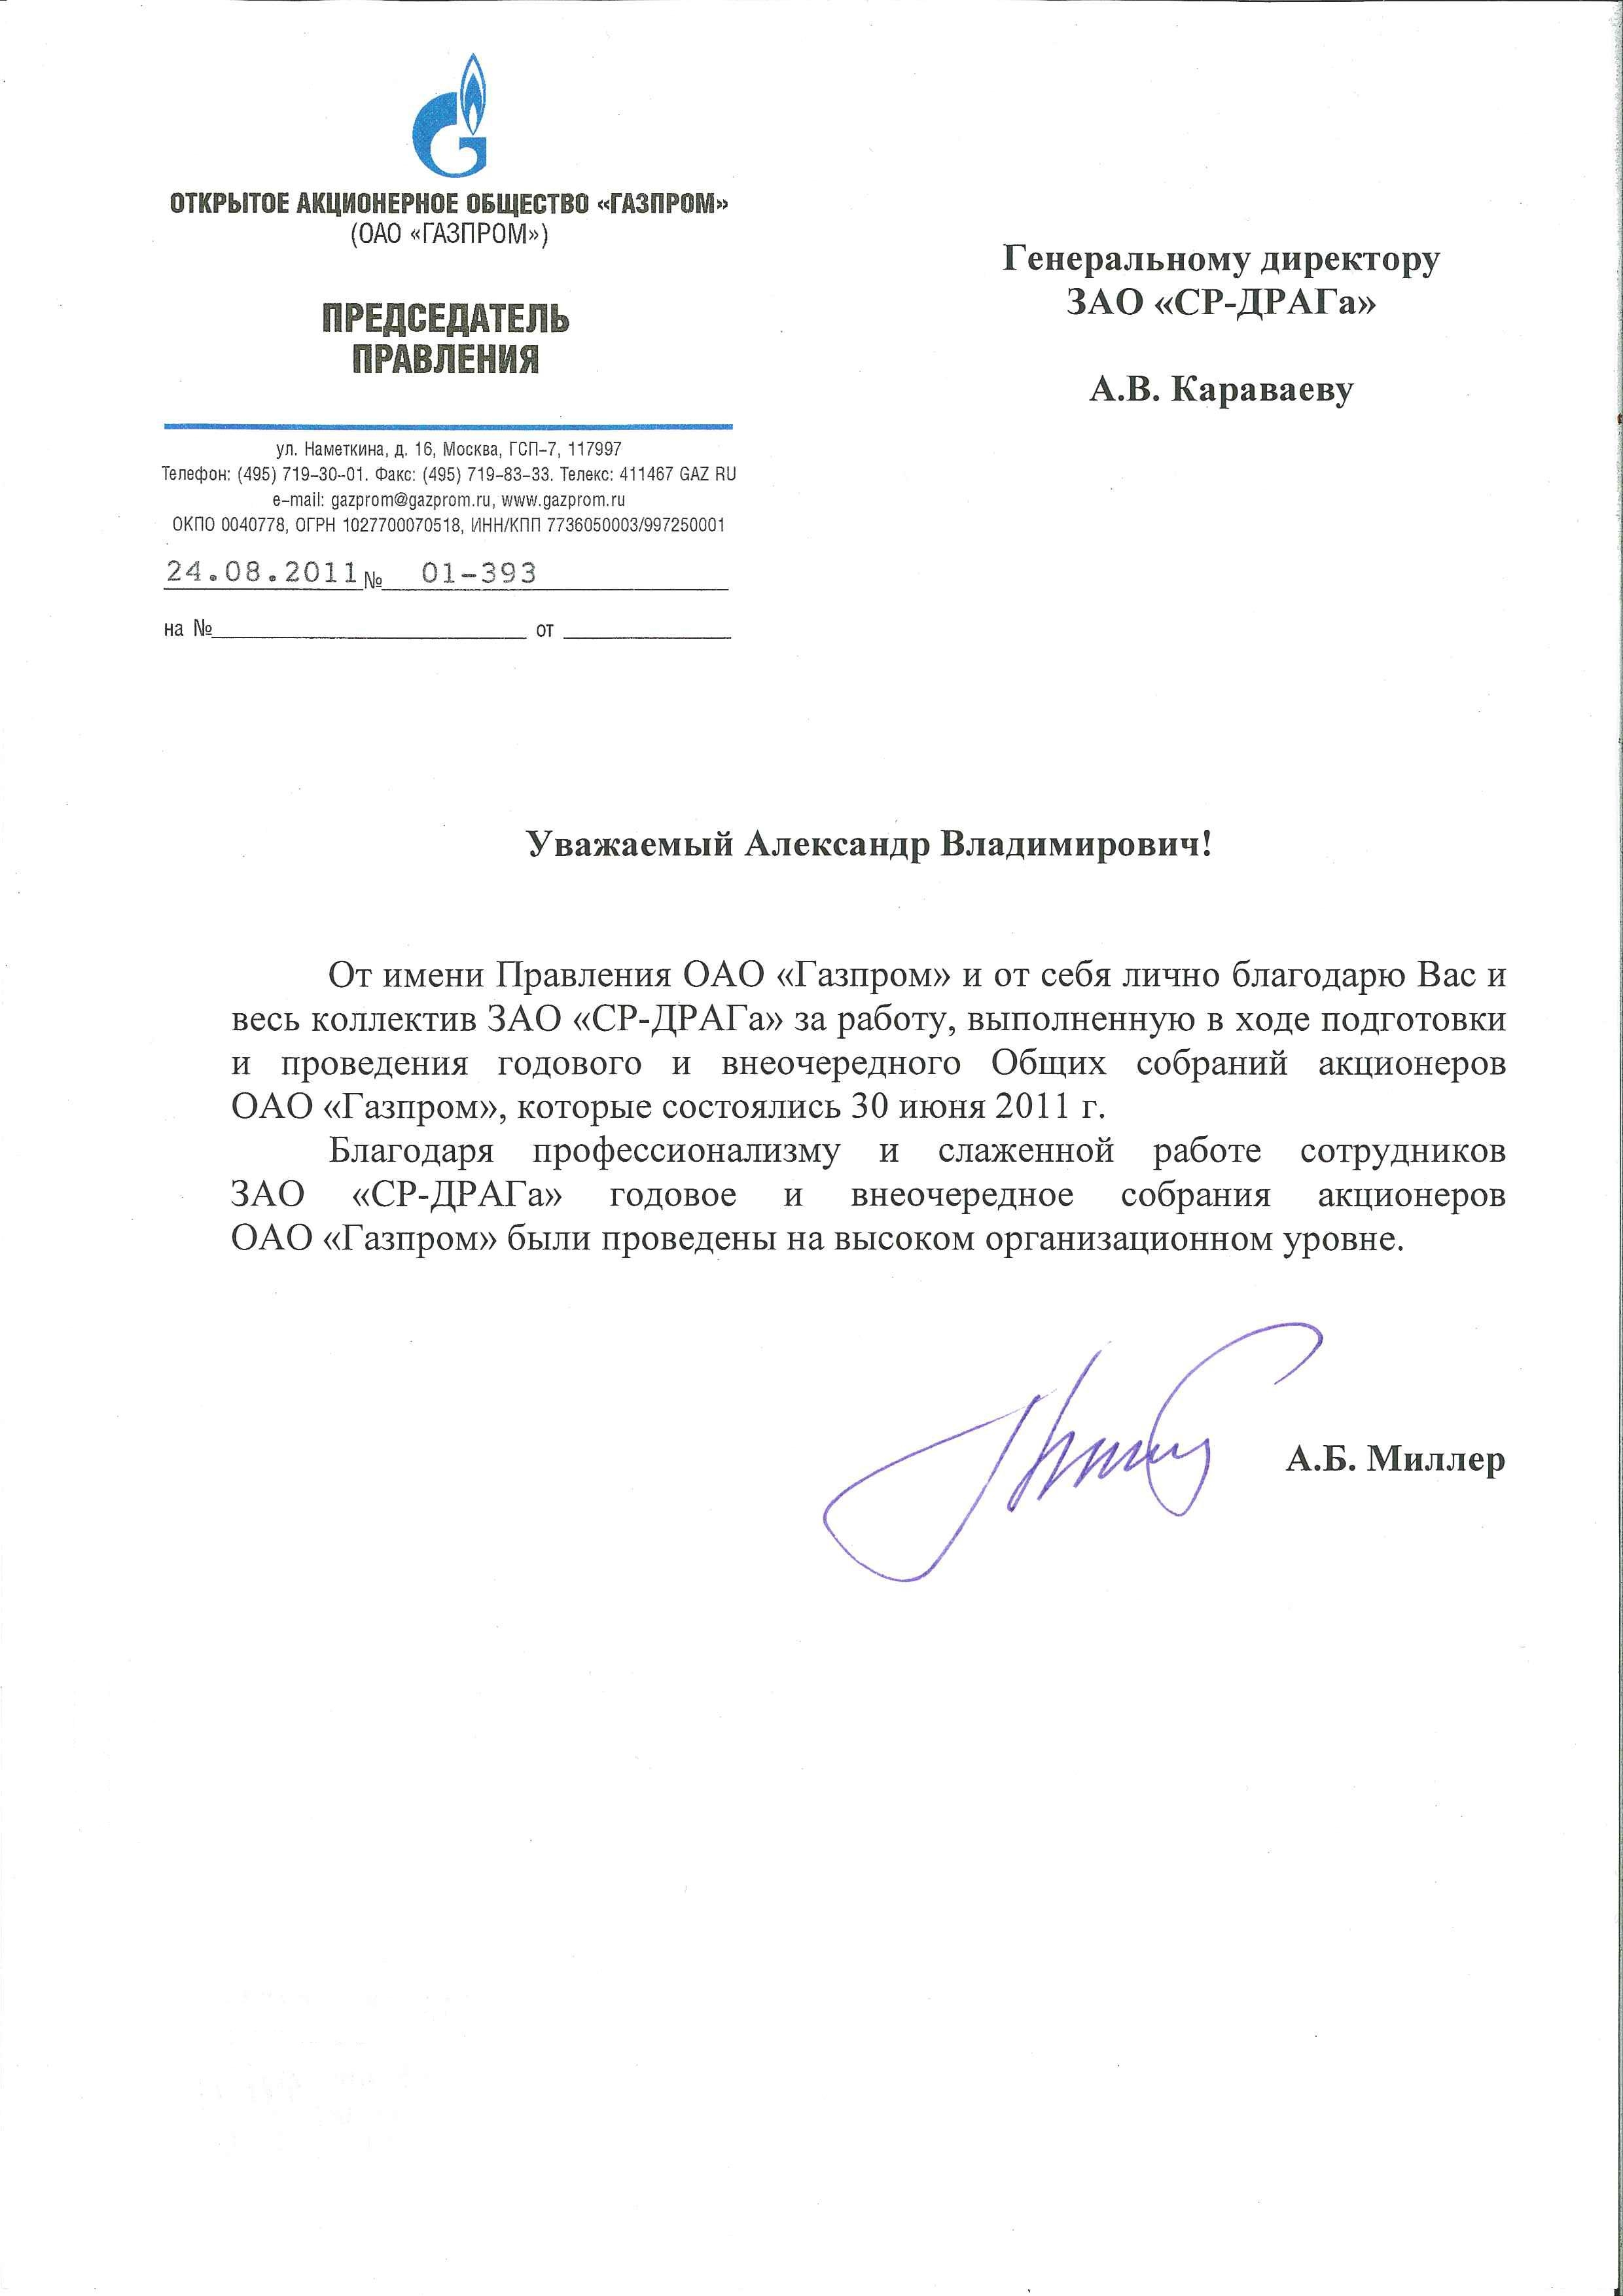 Письмо миллеру. Печать Газпрома для документов.